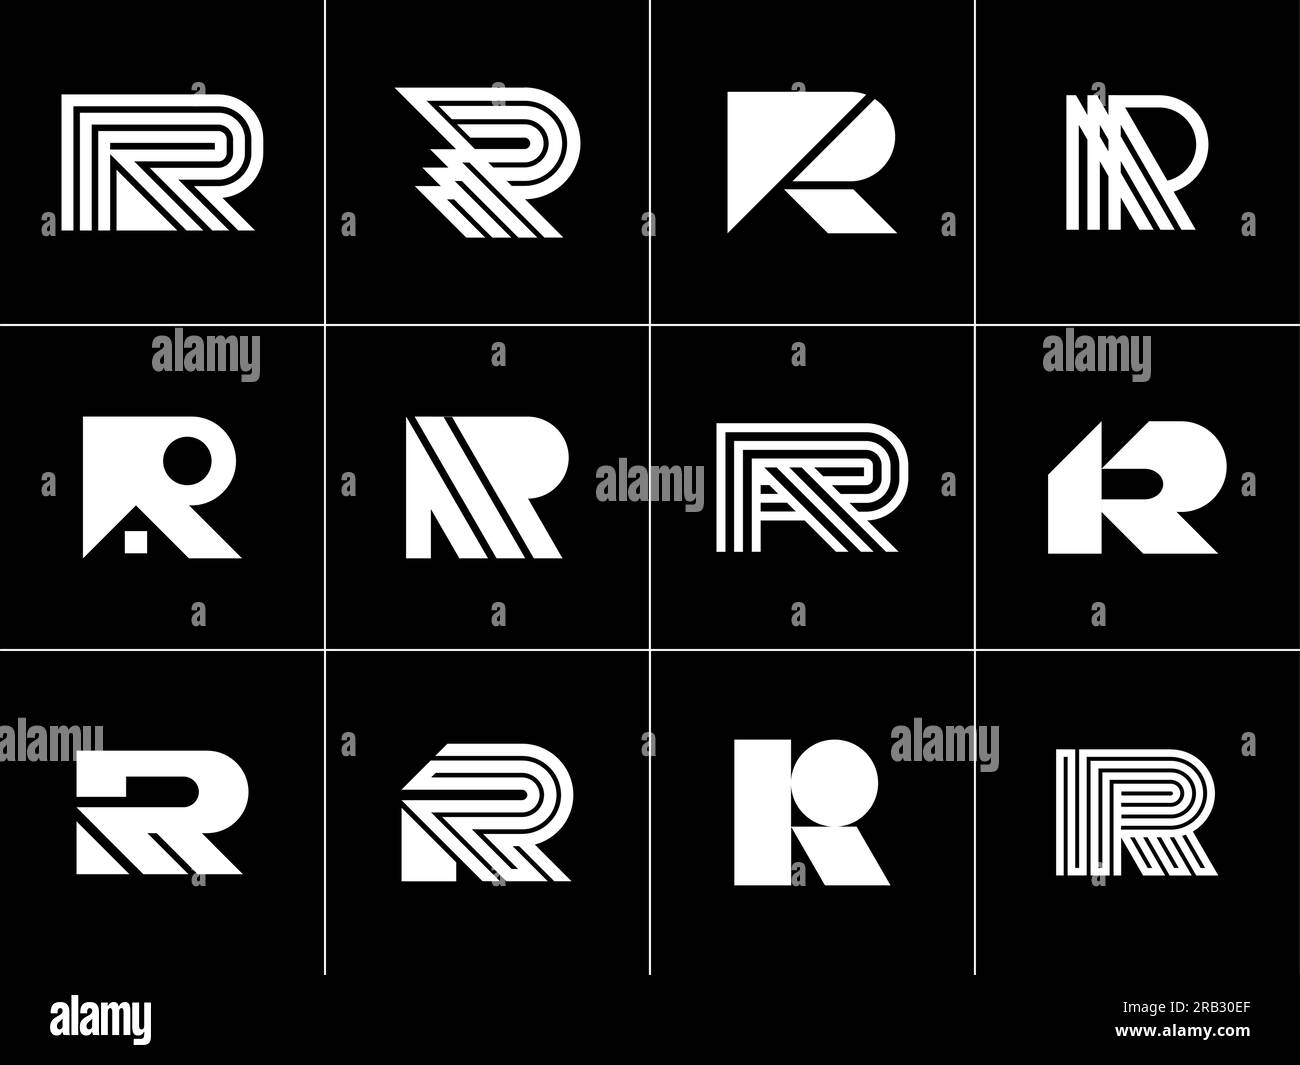 Minimalist line letter R logo design branding. Modern simple initial R logo mark Stock Vector